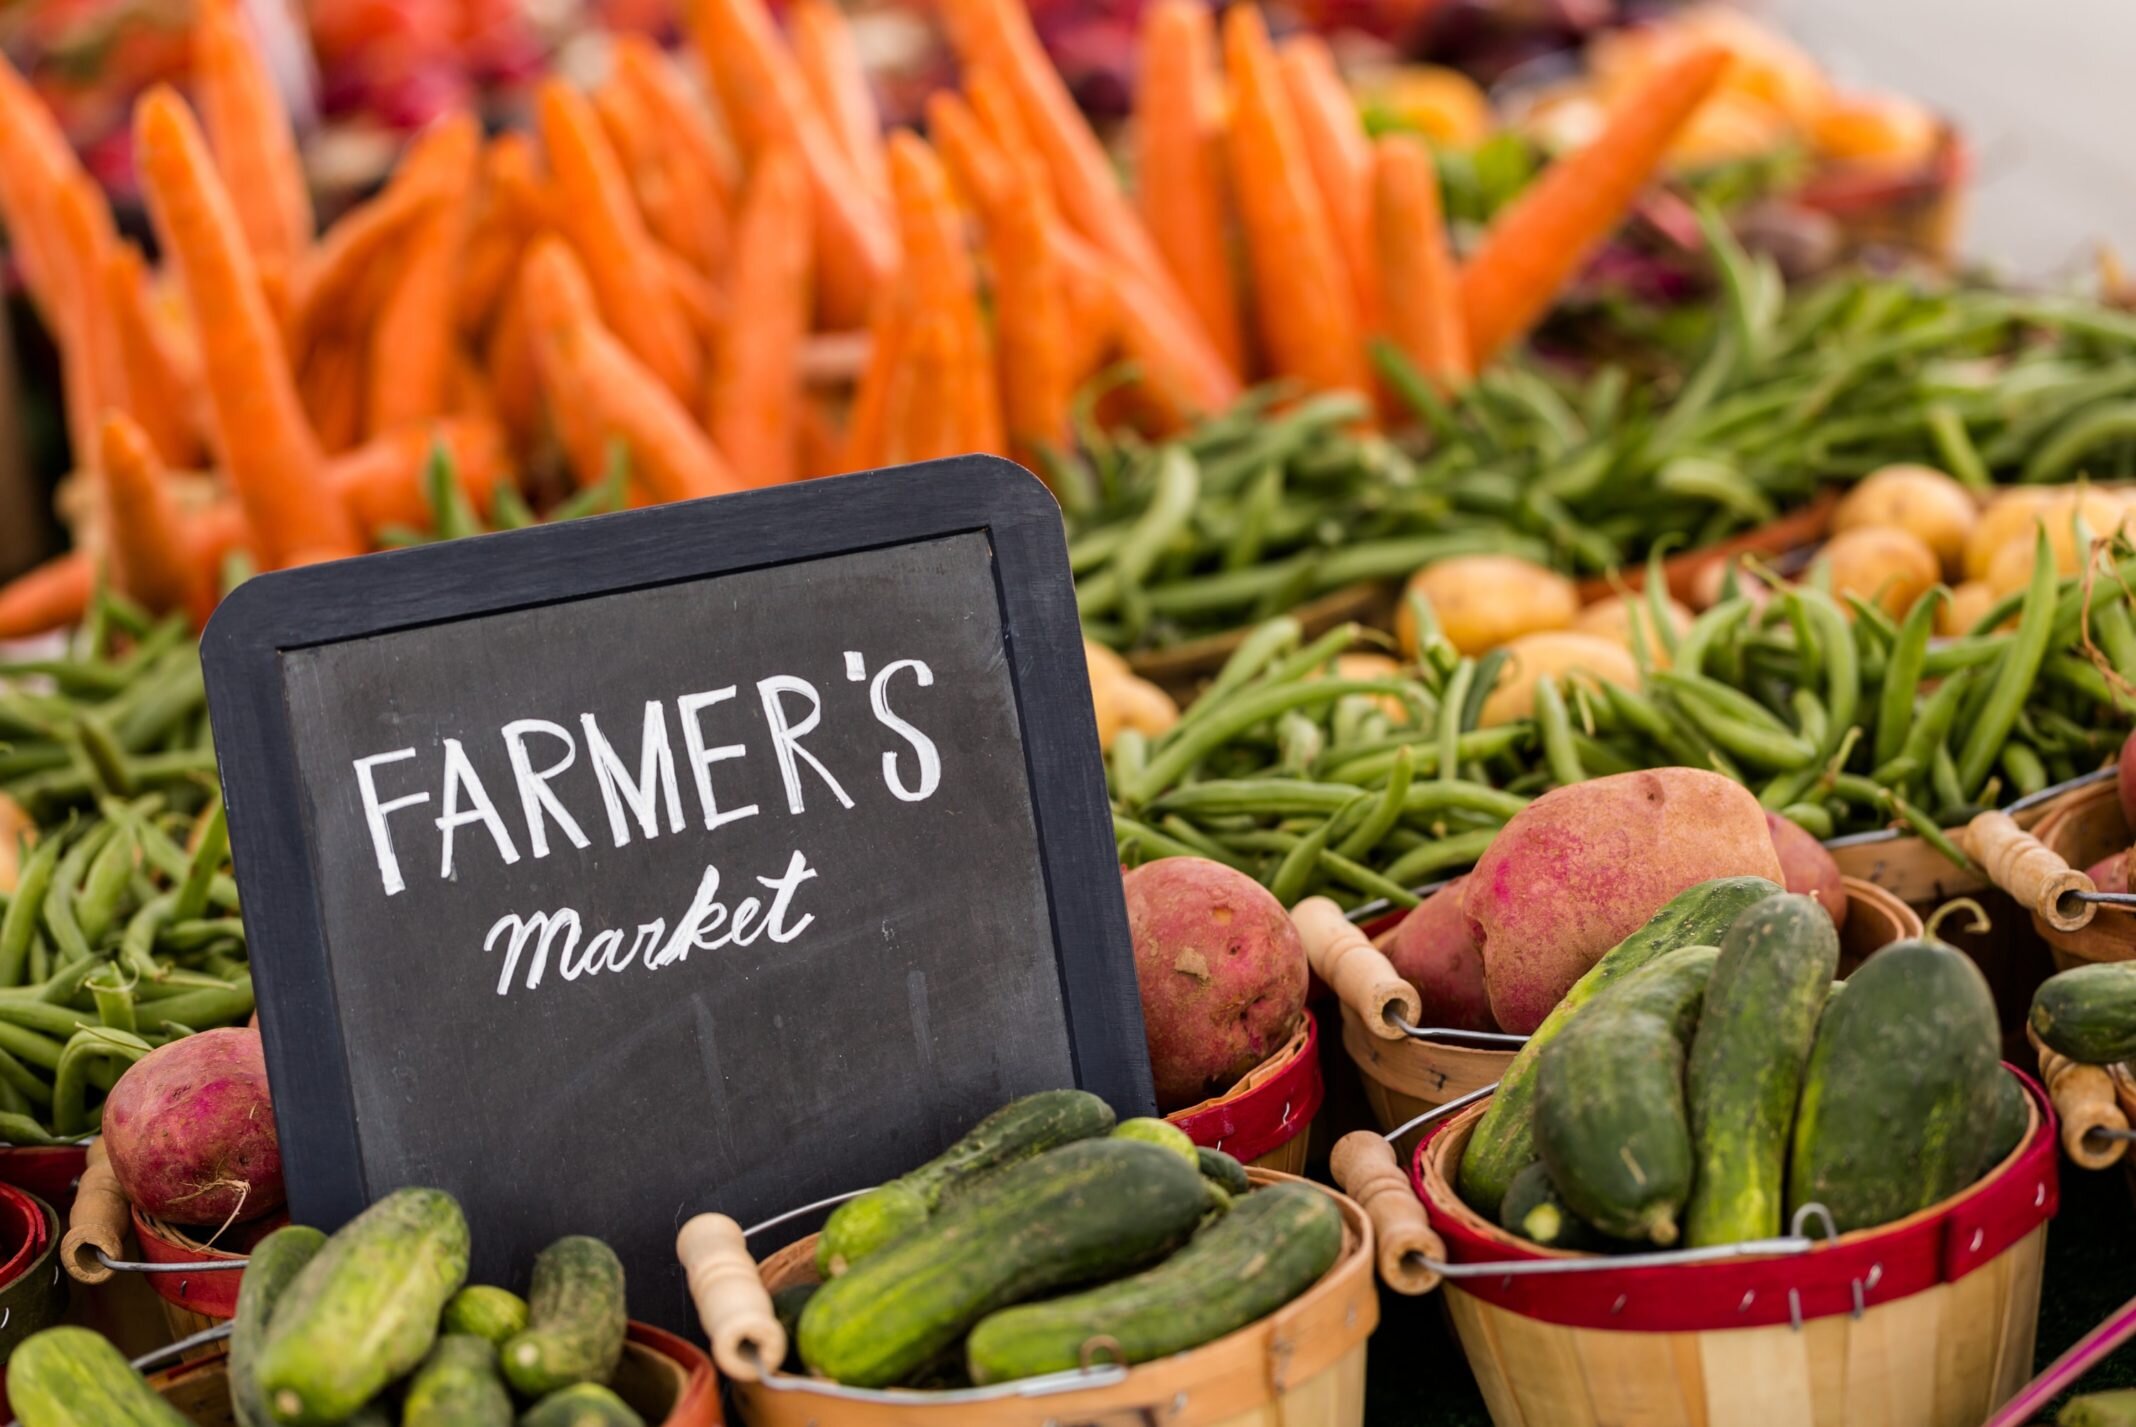 farmers-market-fresh-produce-vegetables-2136x1427.jpeg